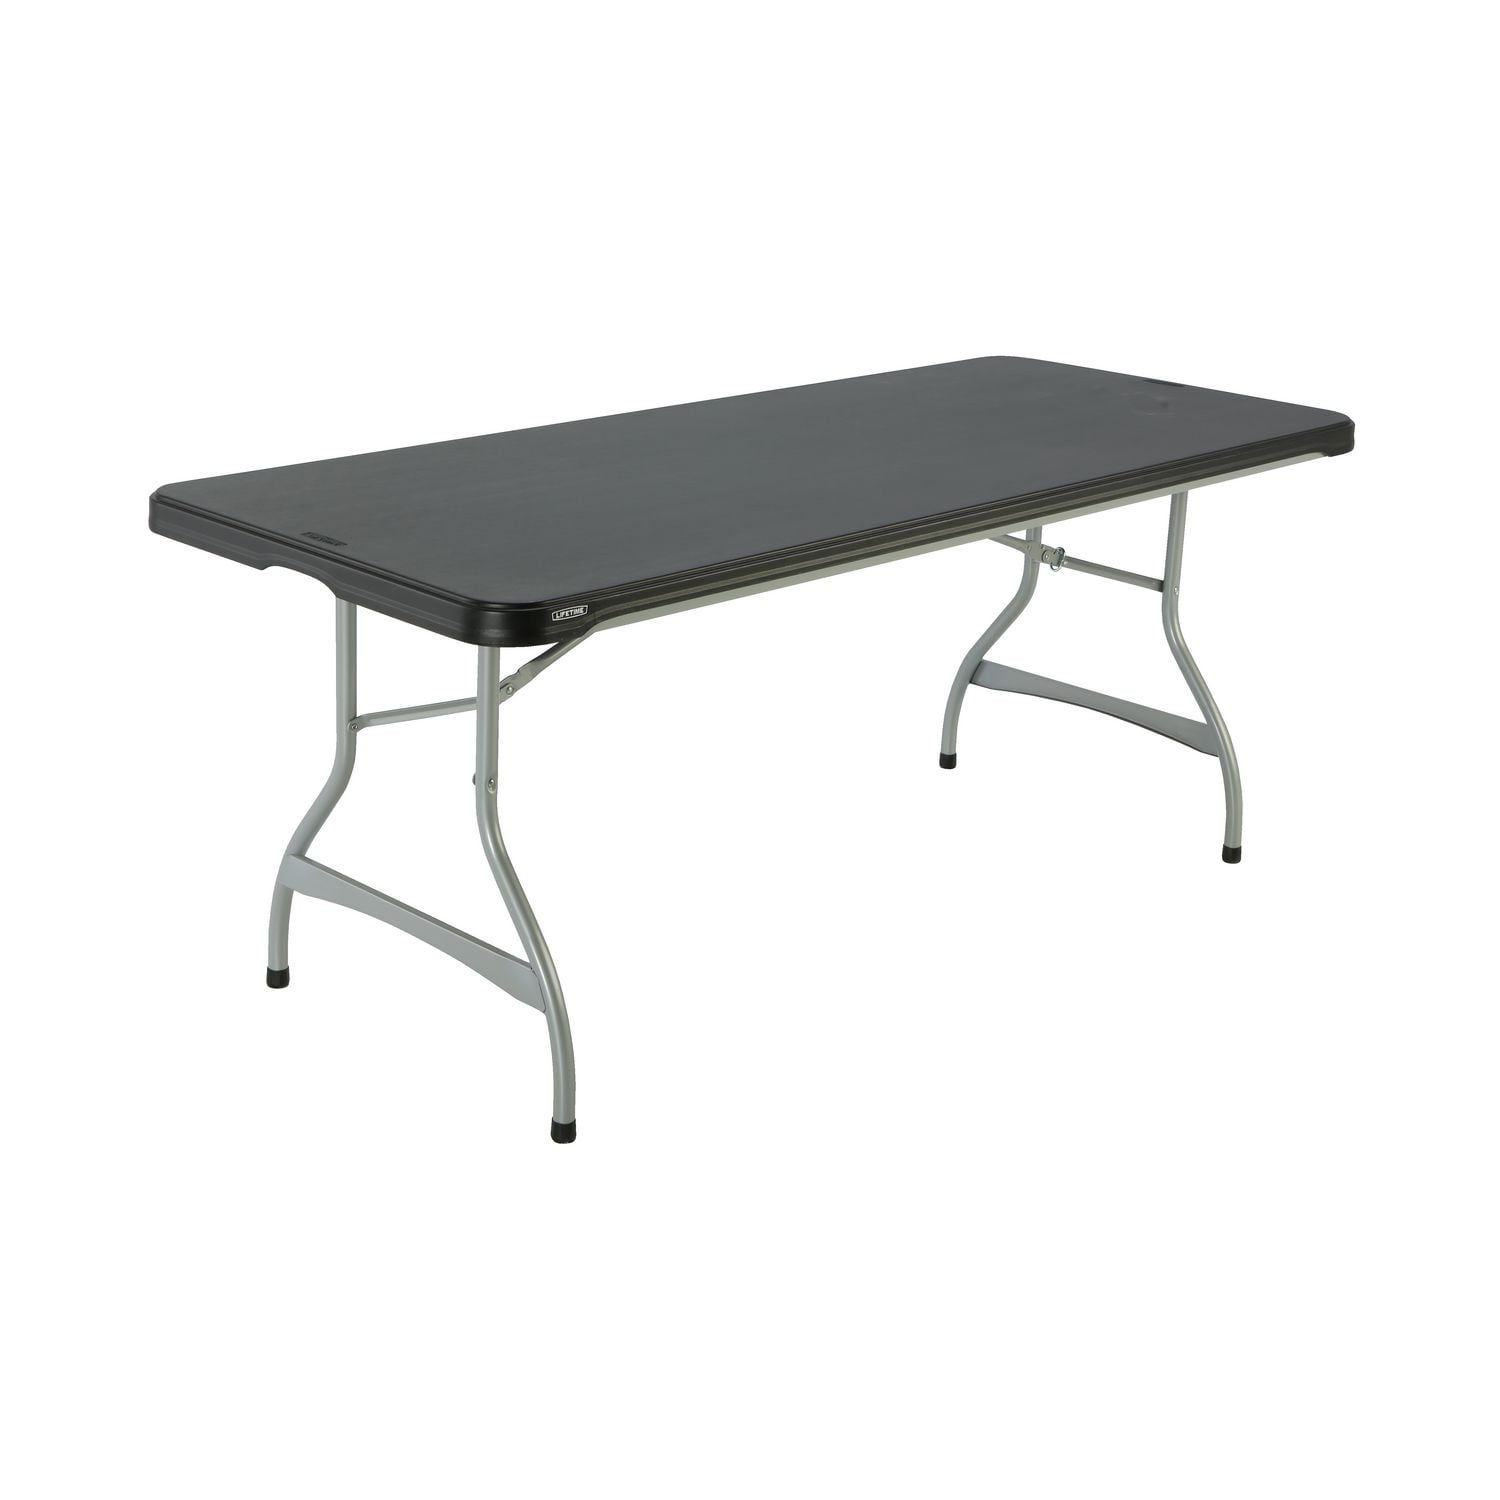 LIFETIME Premium Commercial 6 Foot Foldable Table, Black 